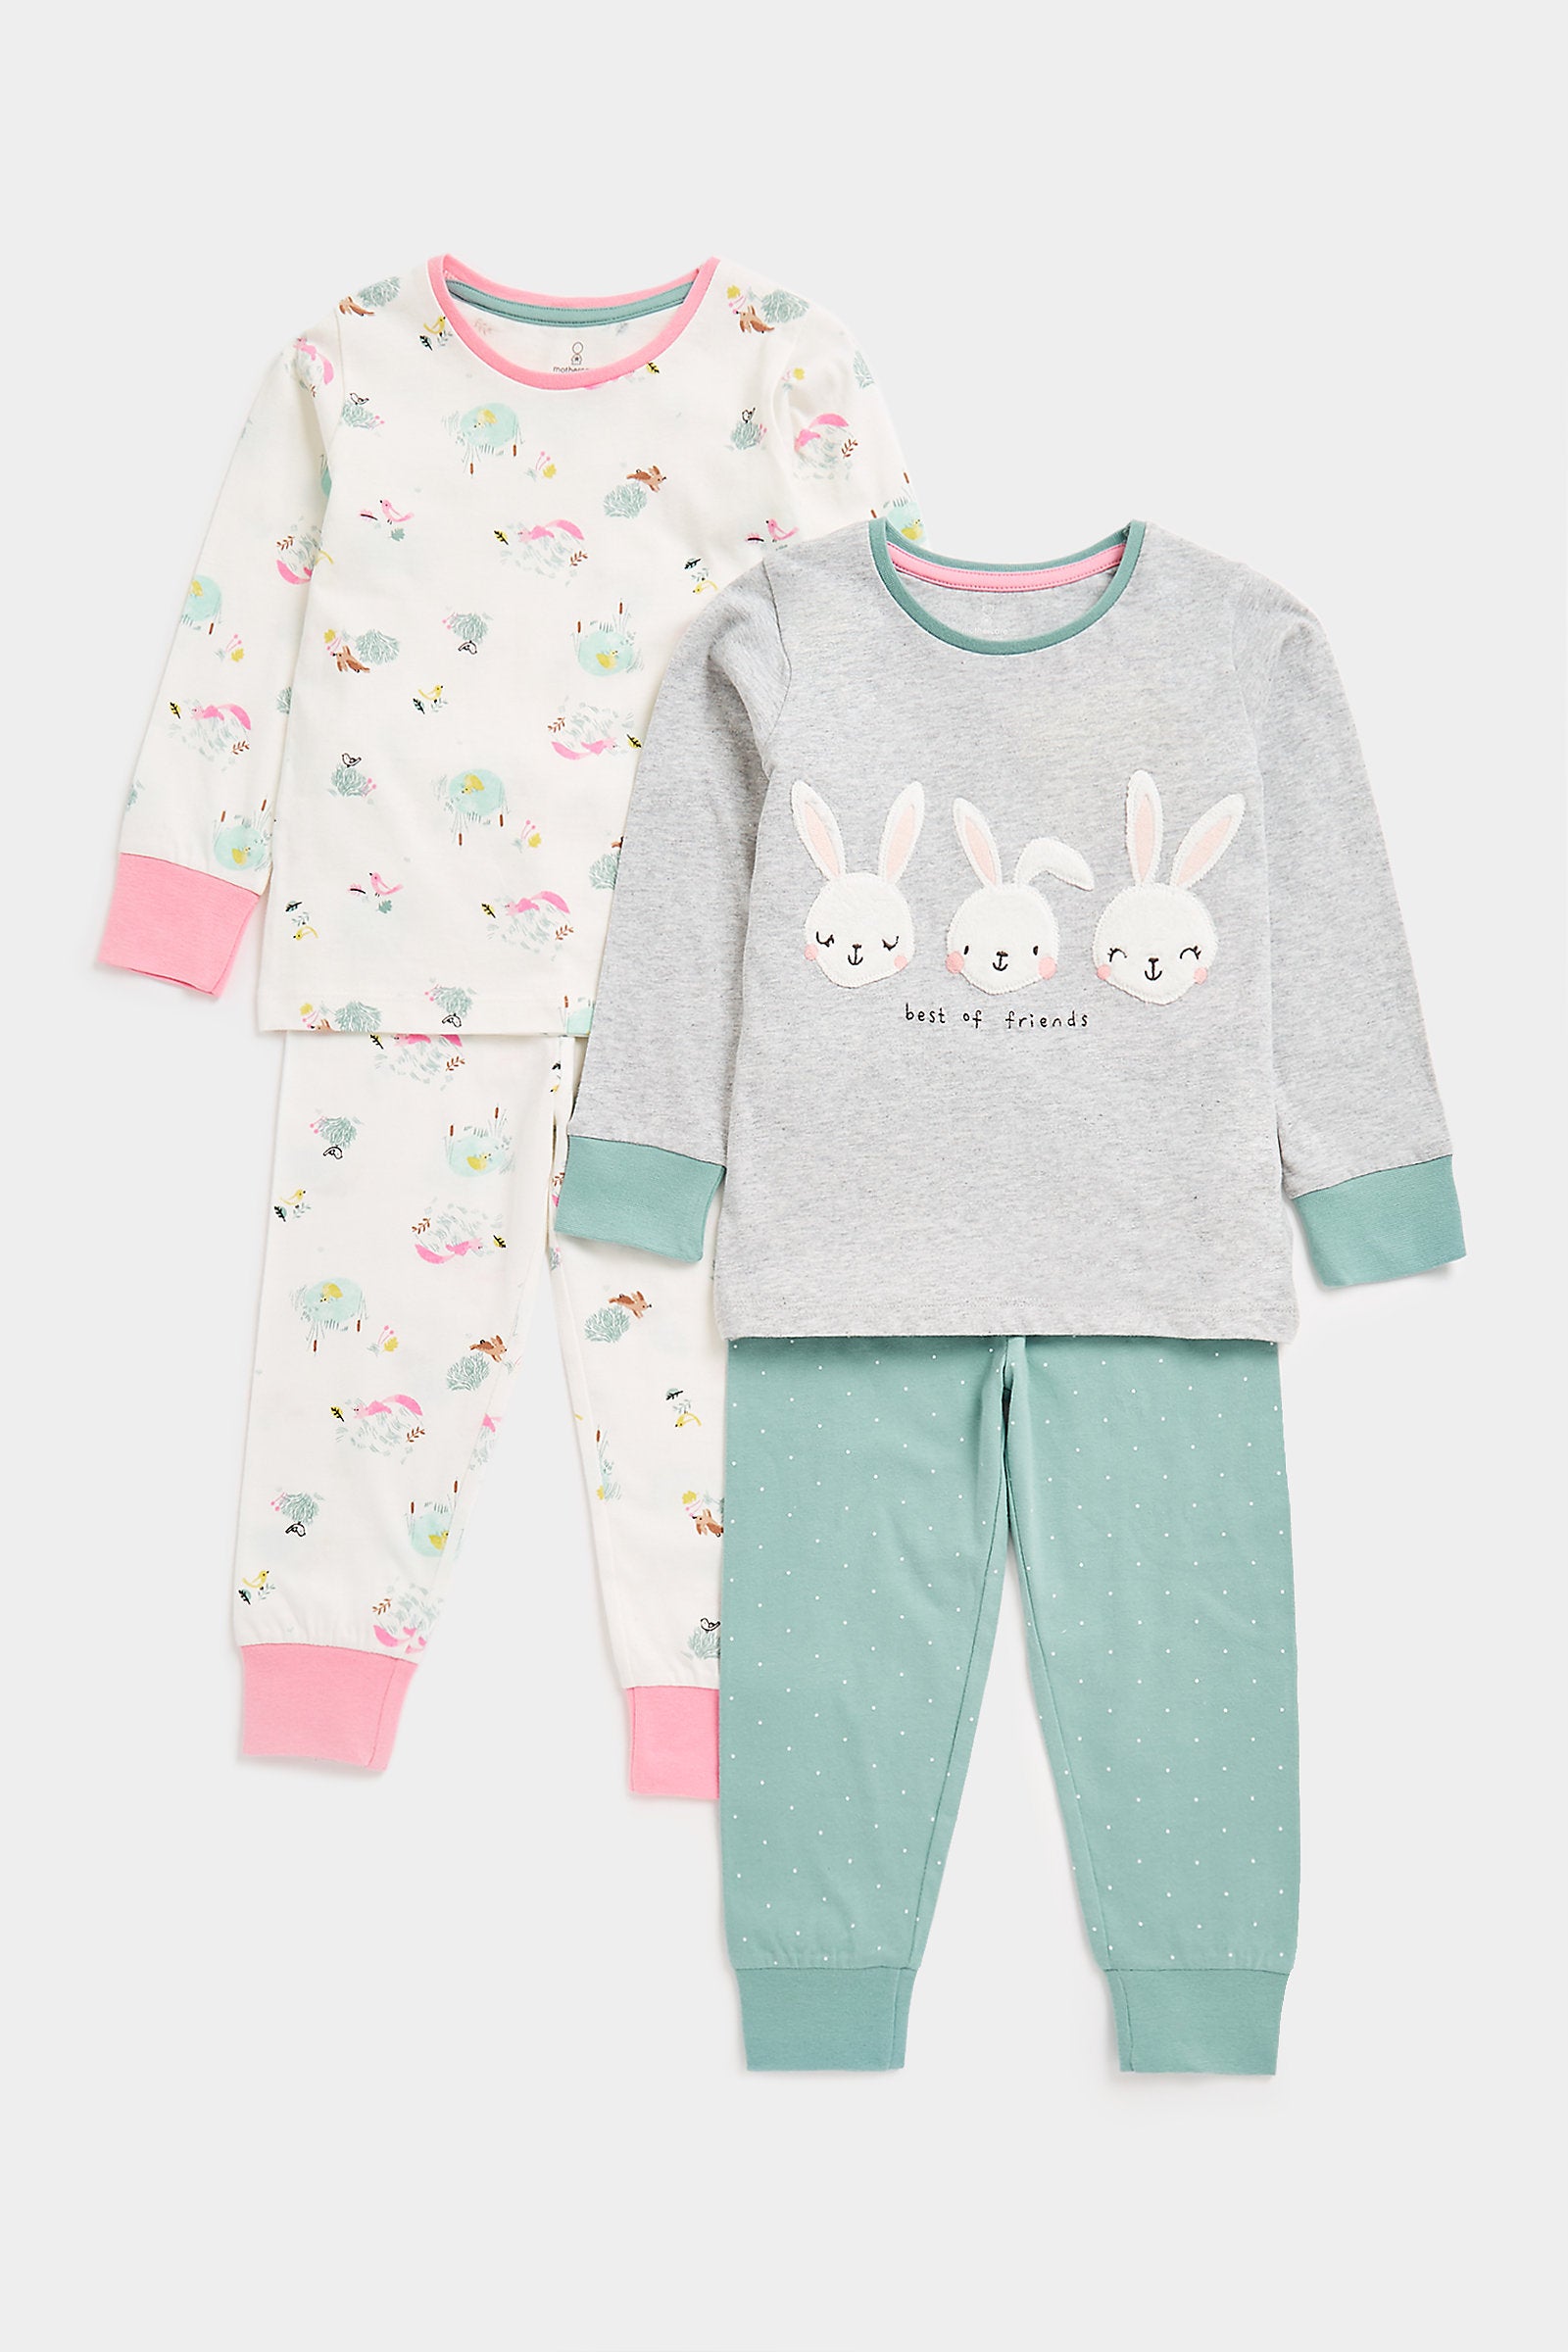 Mothercare Bunny Pyjamas - 2 Pack